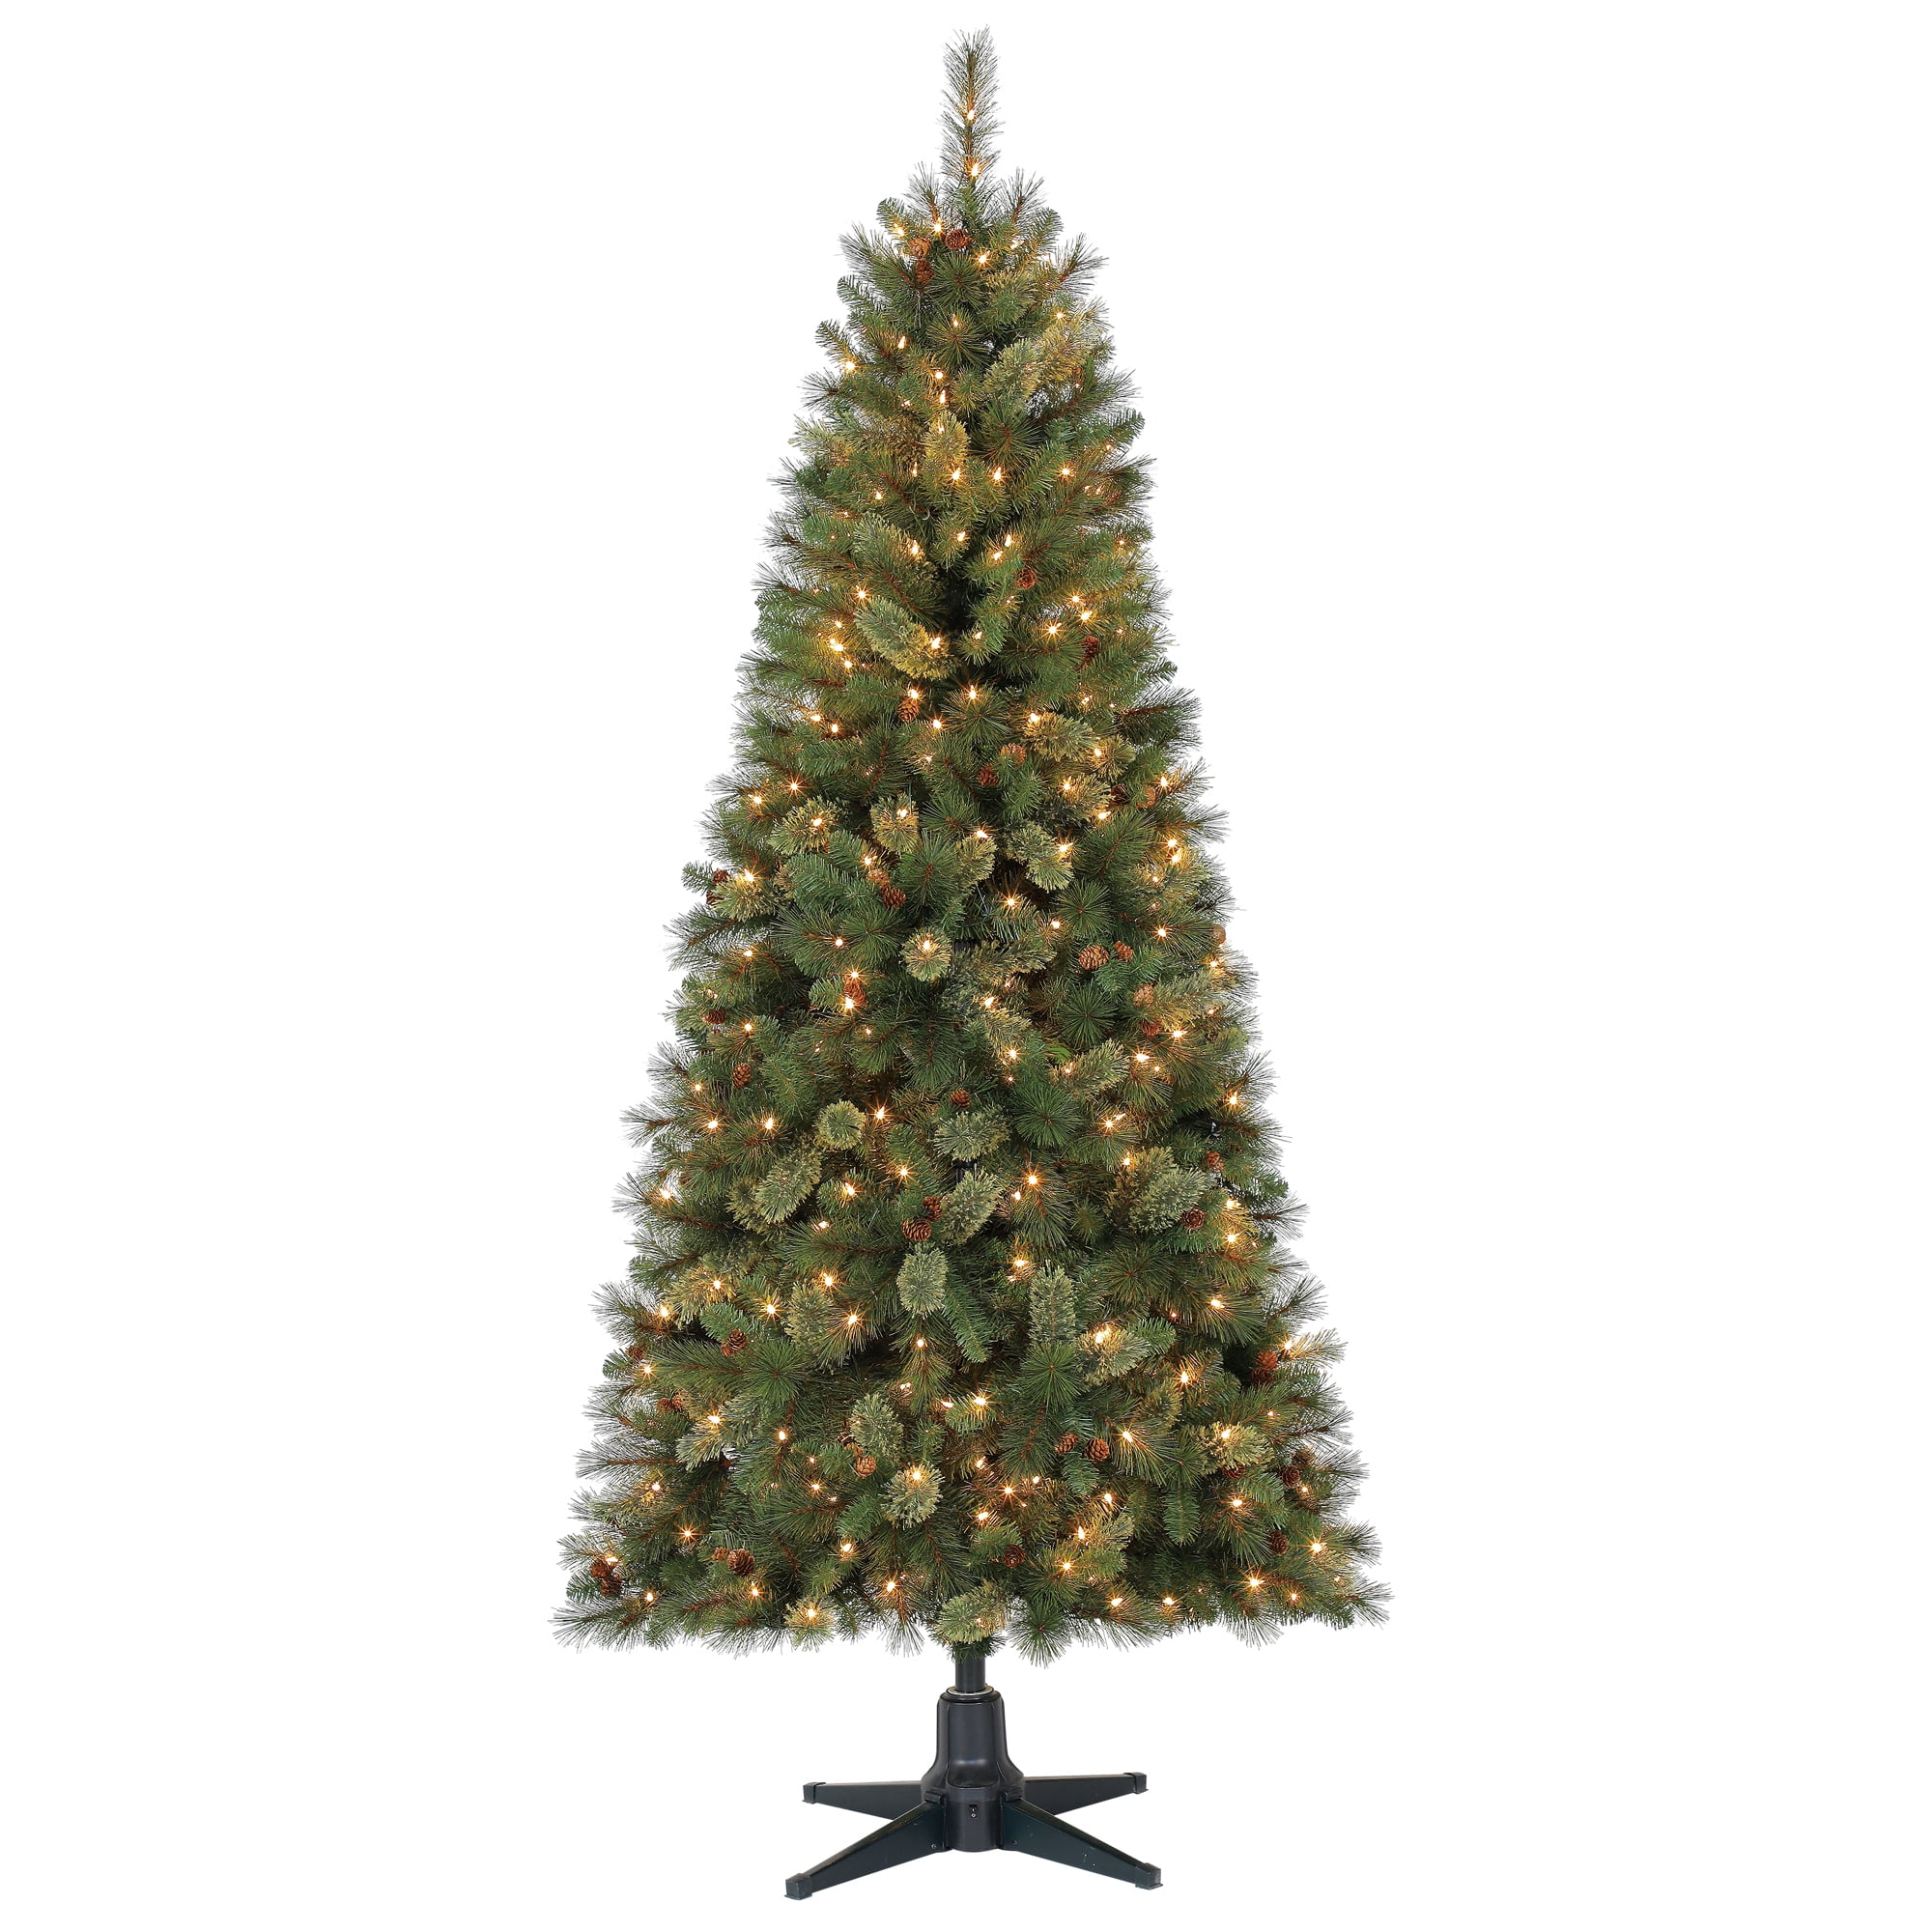 Holiday Time Prelit Fir Christmas Tree 7 ft, Green - Walmart.com 7ft Pre Lit Brookfield Cashmere Fir